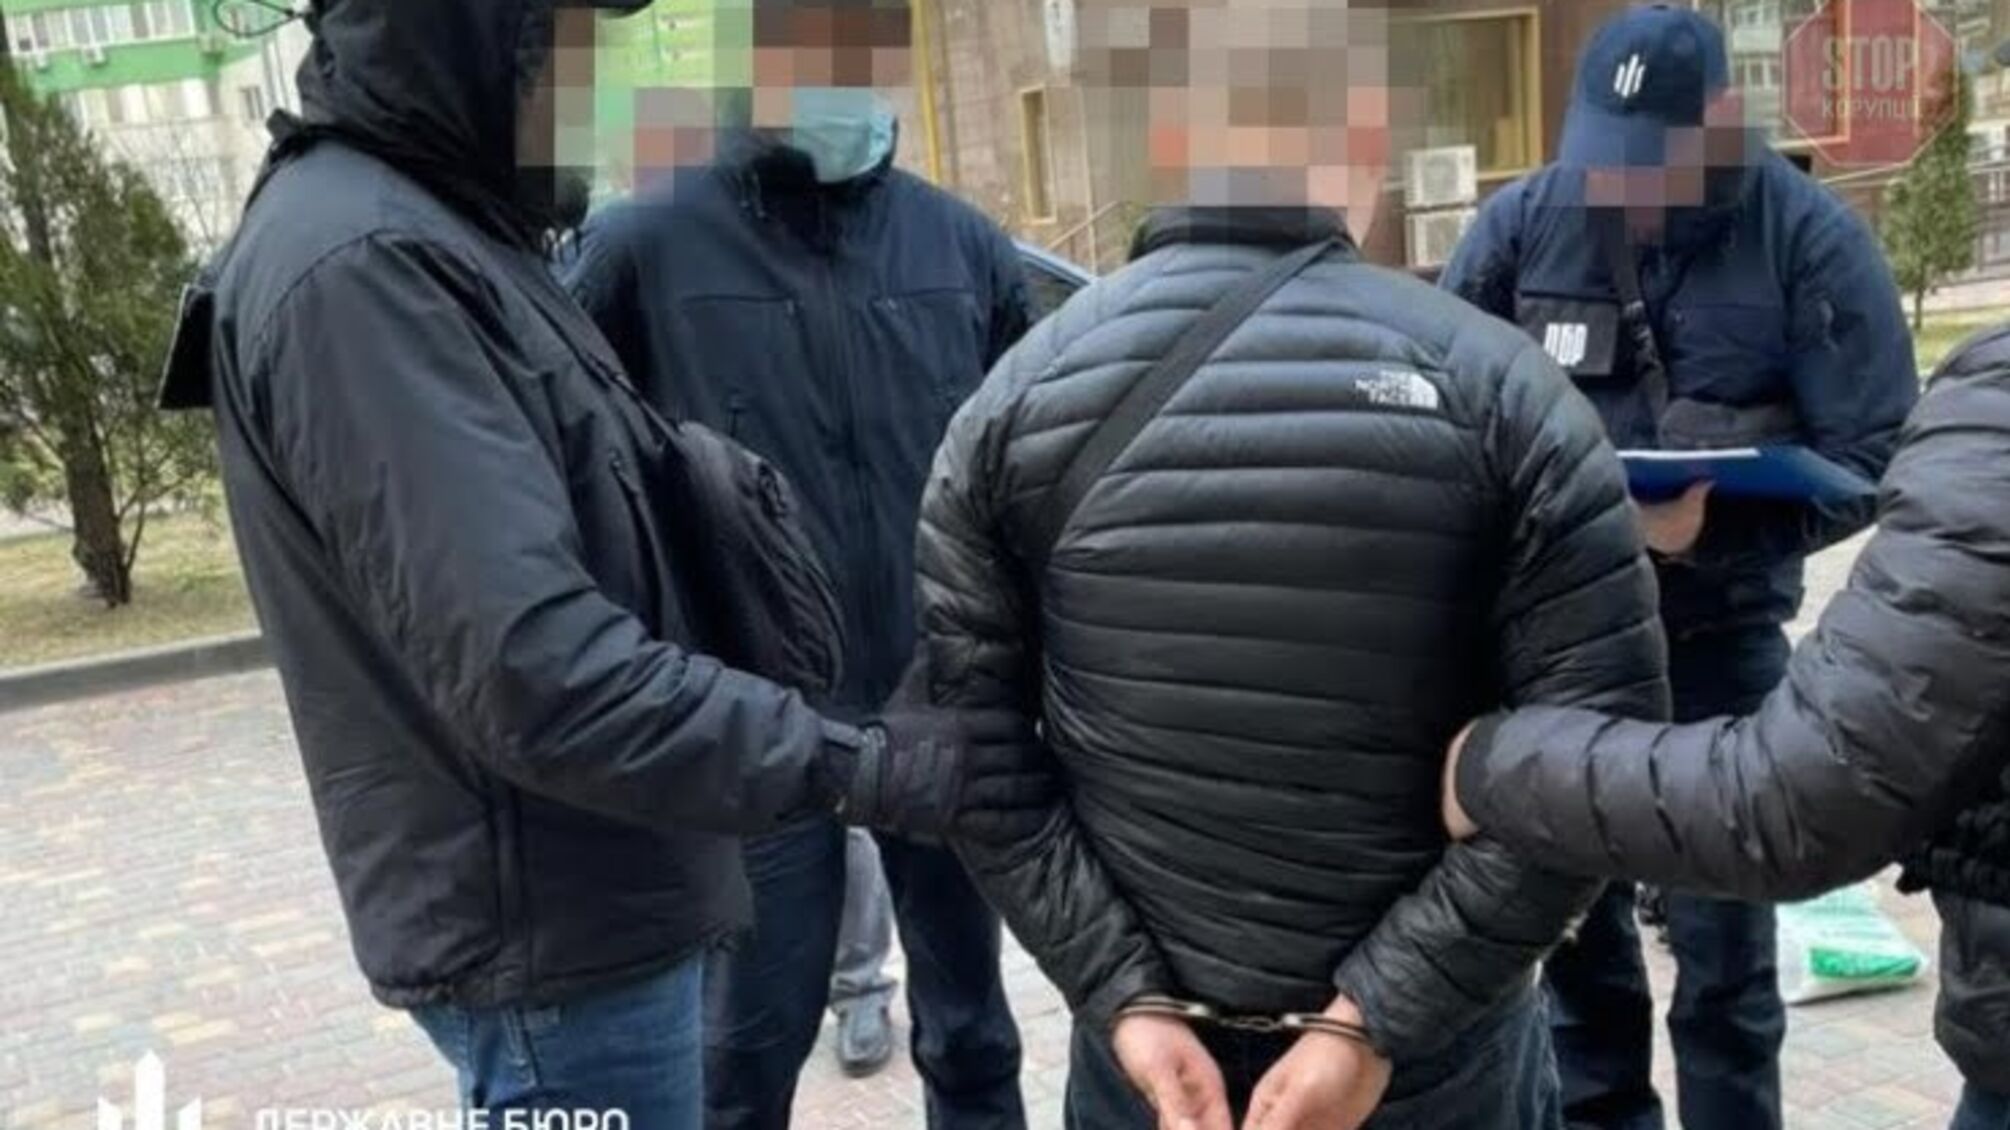 Новини Одеси: ДБР затримало поліцейського, який “погорів” на хабарі (фото)